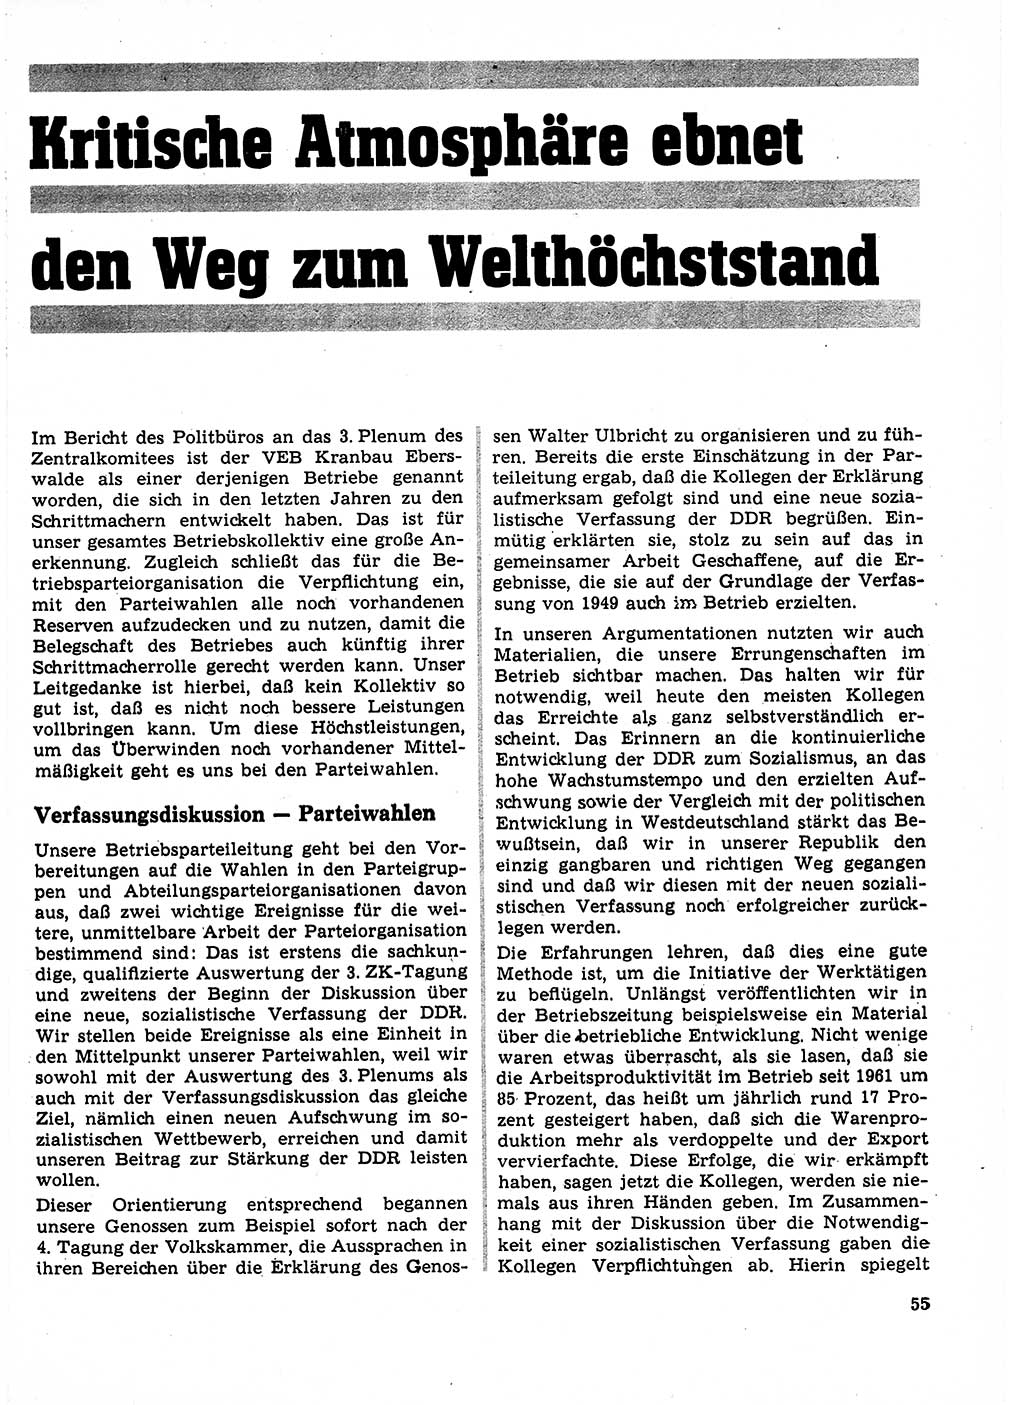 Neuer Weg (NW), Organ des Zentralkomitees (ZK) der SED (Sozialistische Einheitspartei Deutschlands) für Fragen des Parteilebens, 23. Jahrgang [Deutsche Demokratische Republik (DDR)] 1968, Seite 55 (NW ZK SED DDR 1968, S. 55)